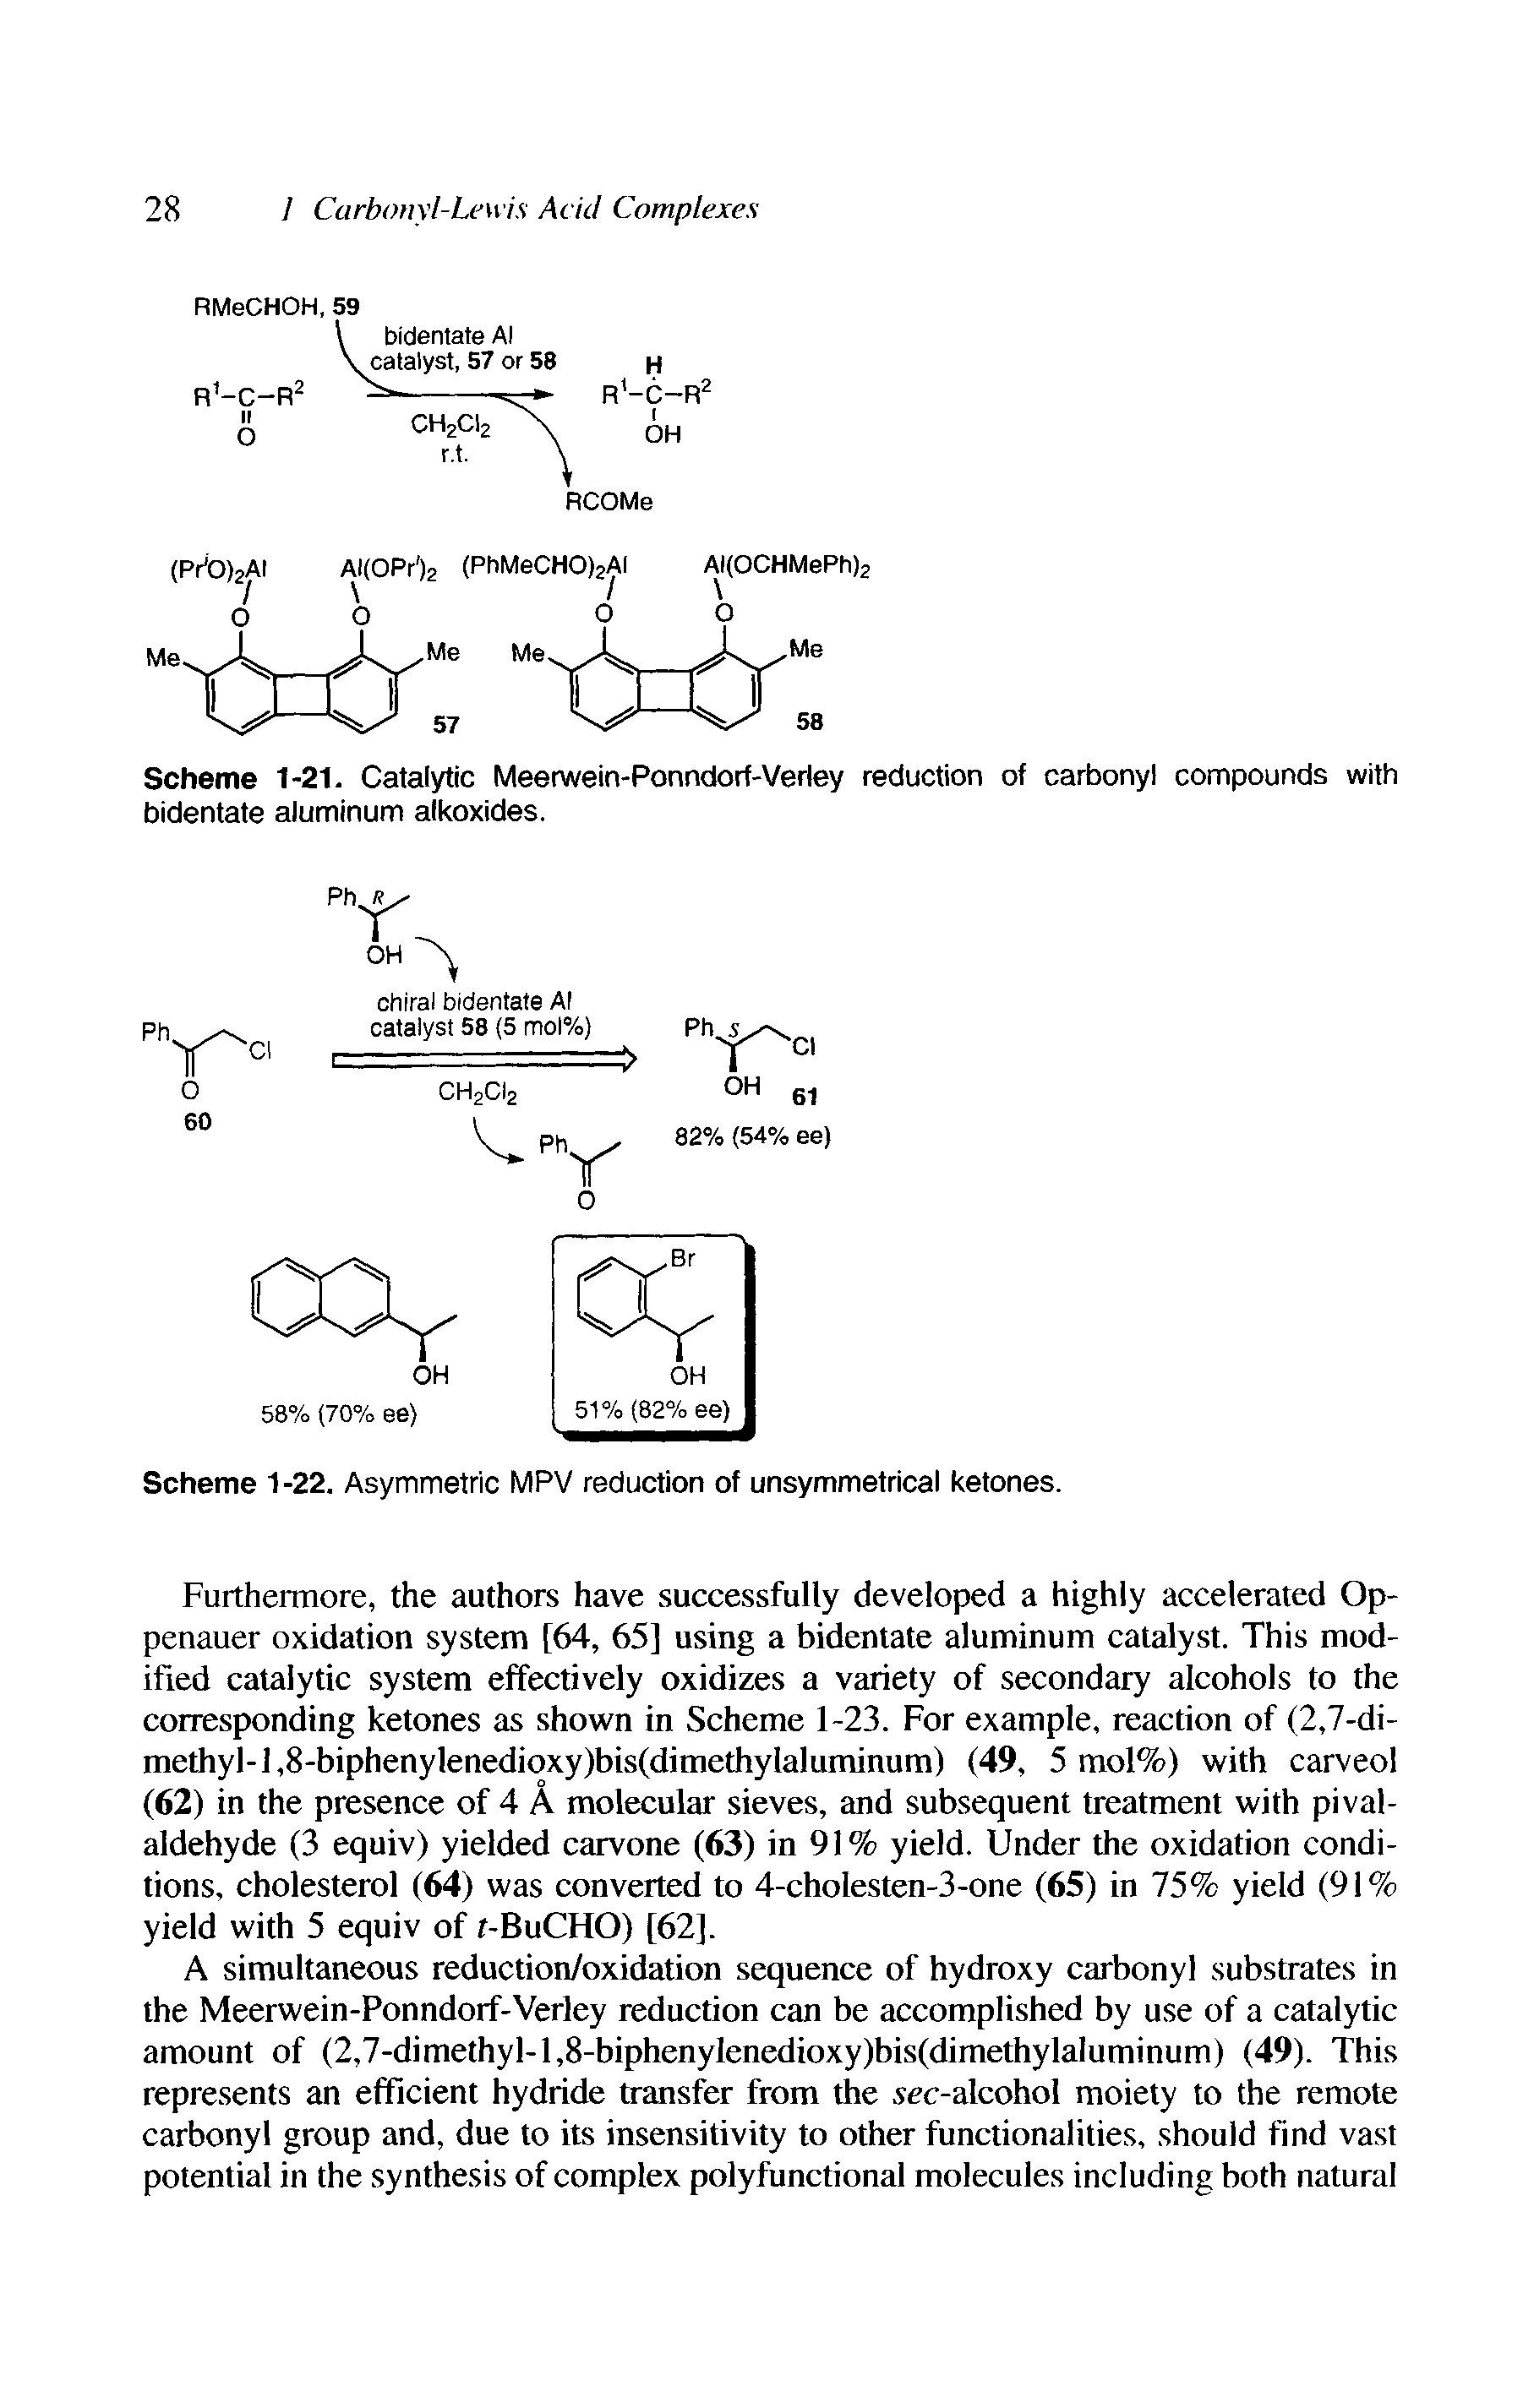 Scheme 1-21. Catalytic Meerwein-Ponndorf-Verley reduction of carbonyl compounds with bidentate aluminum alkoxides.